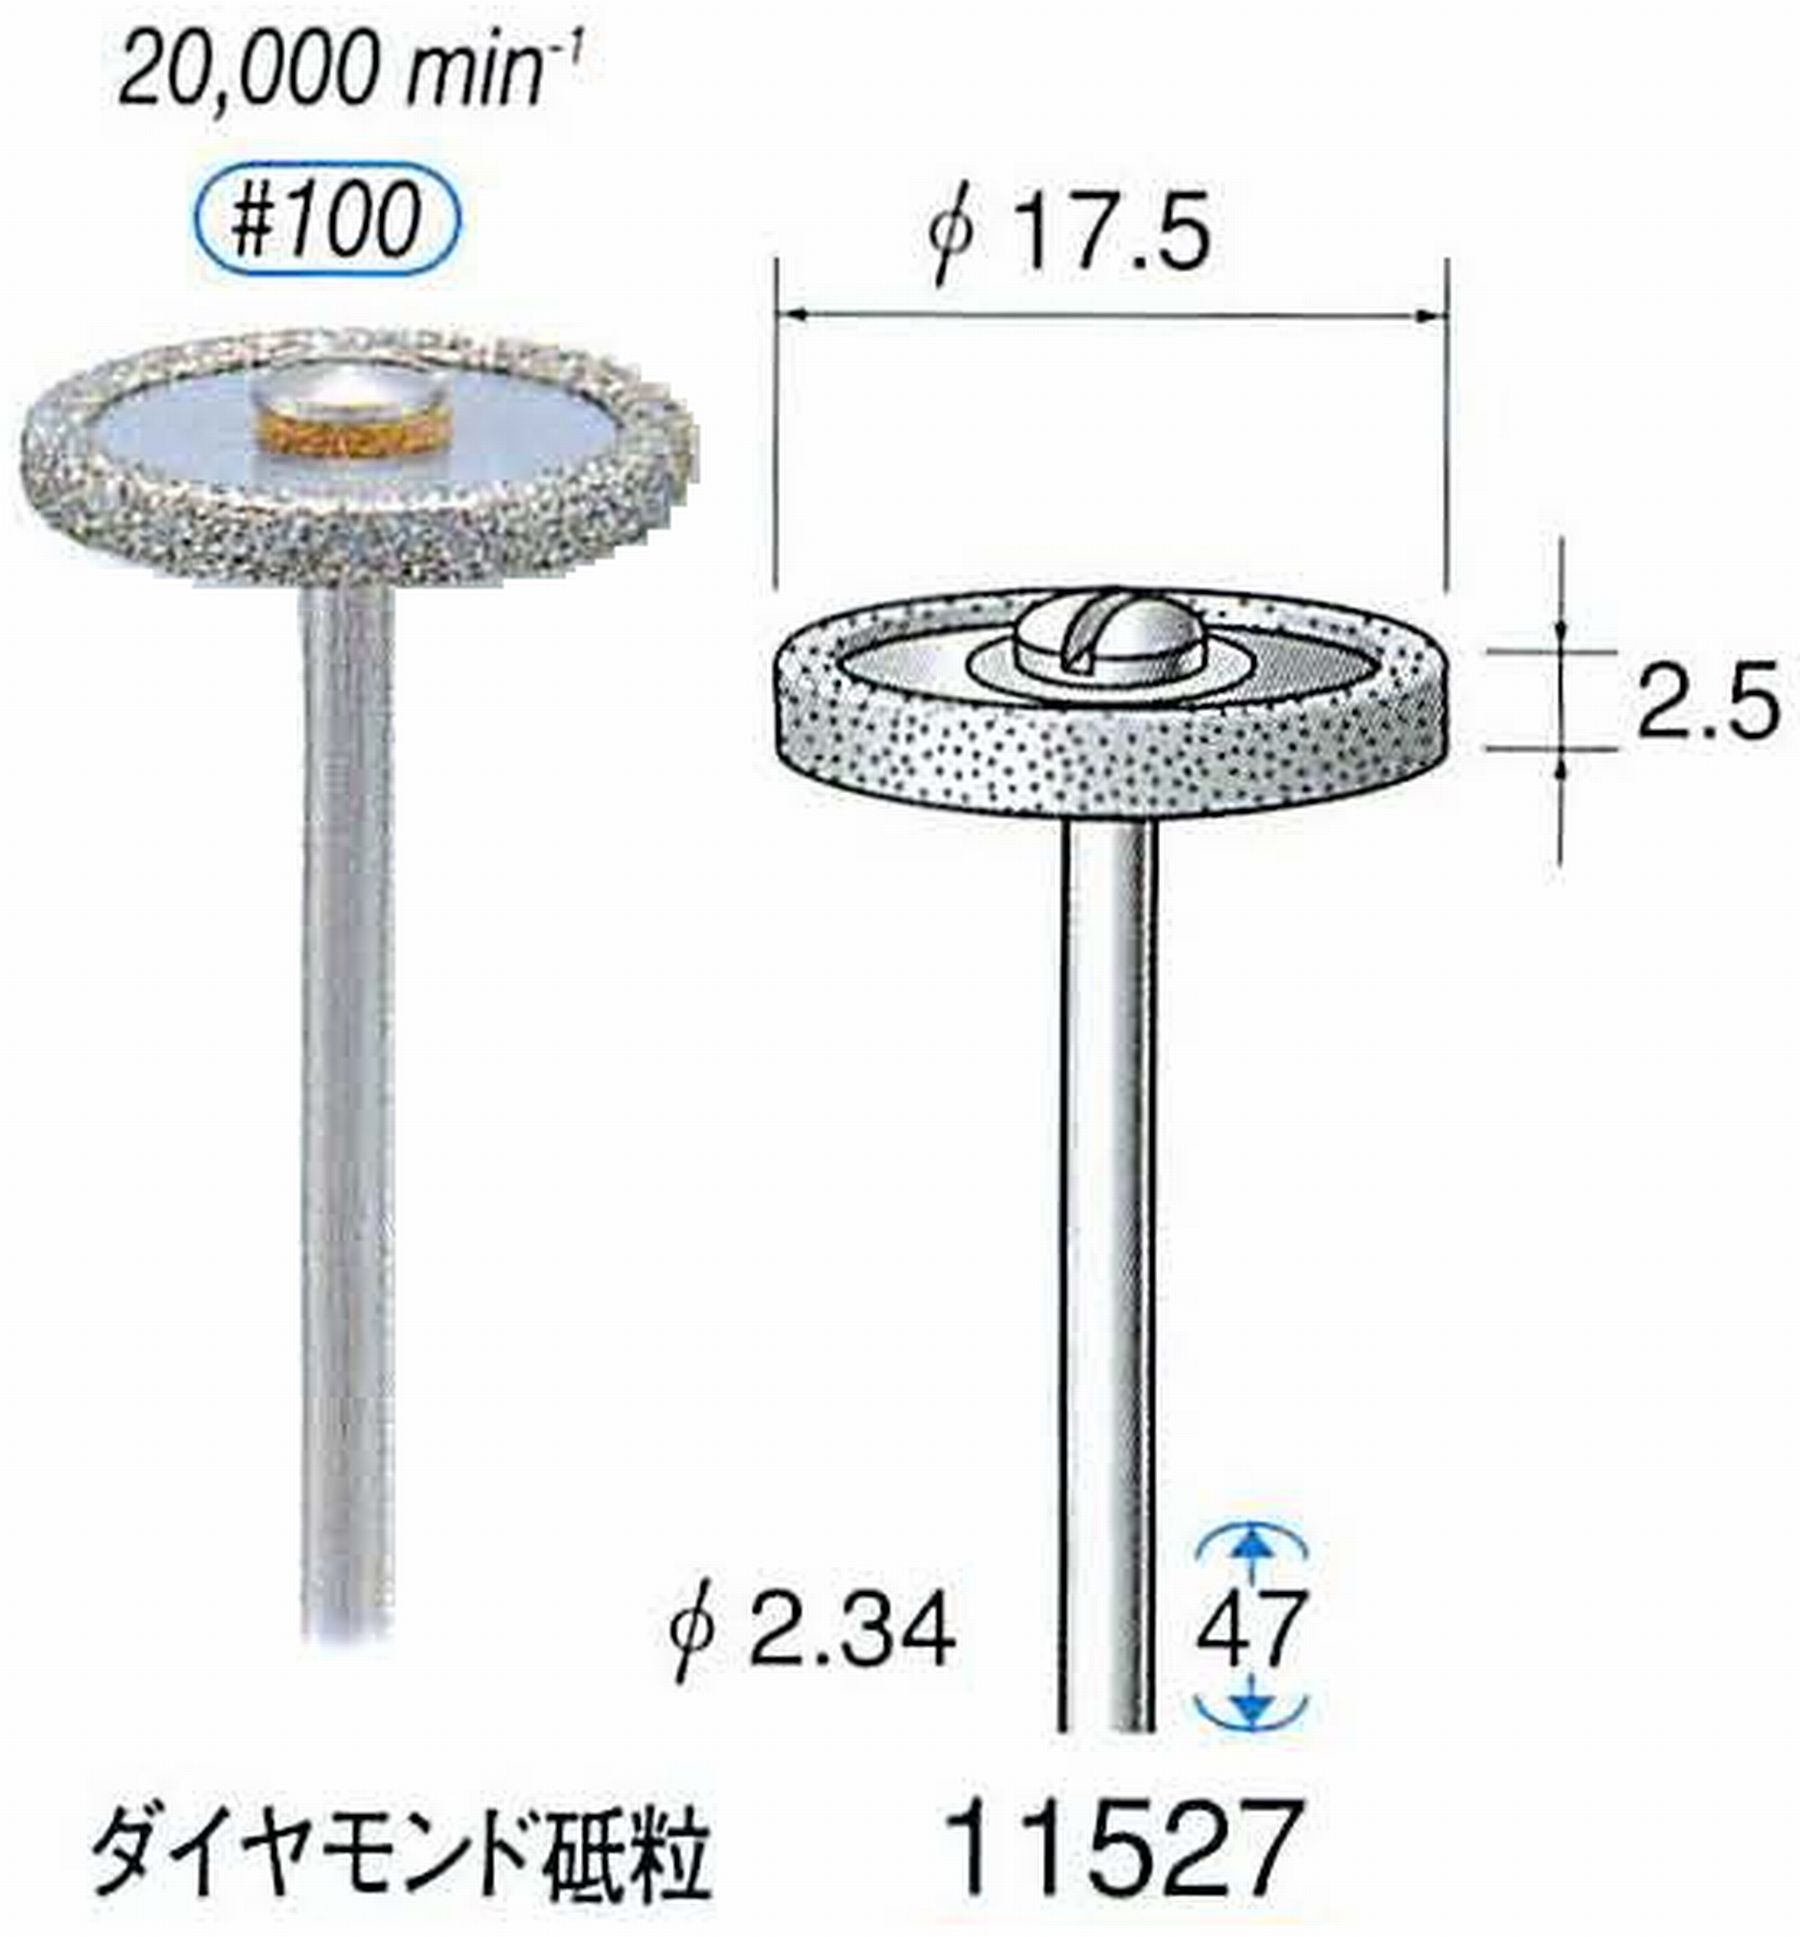 ナカニシ/NAKANISHI 電着ダイヤモンドバー ダイヤモンド砥粒 軸径(シャンク)φ2.34mm 11527